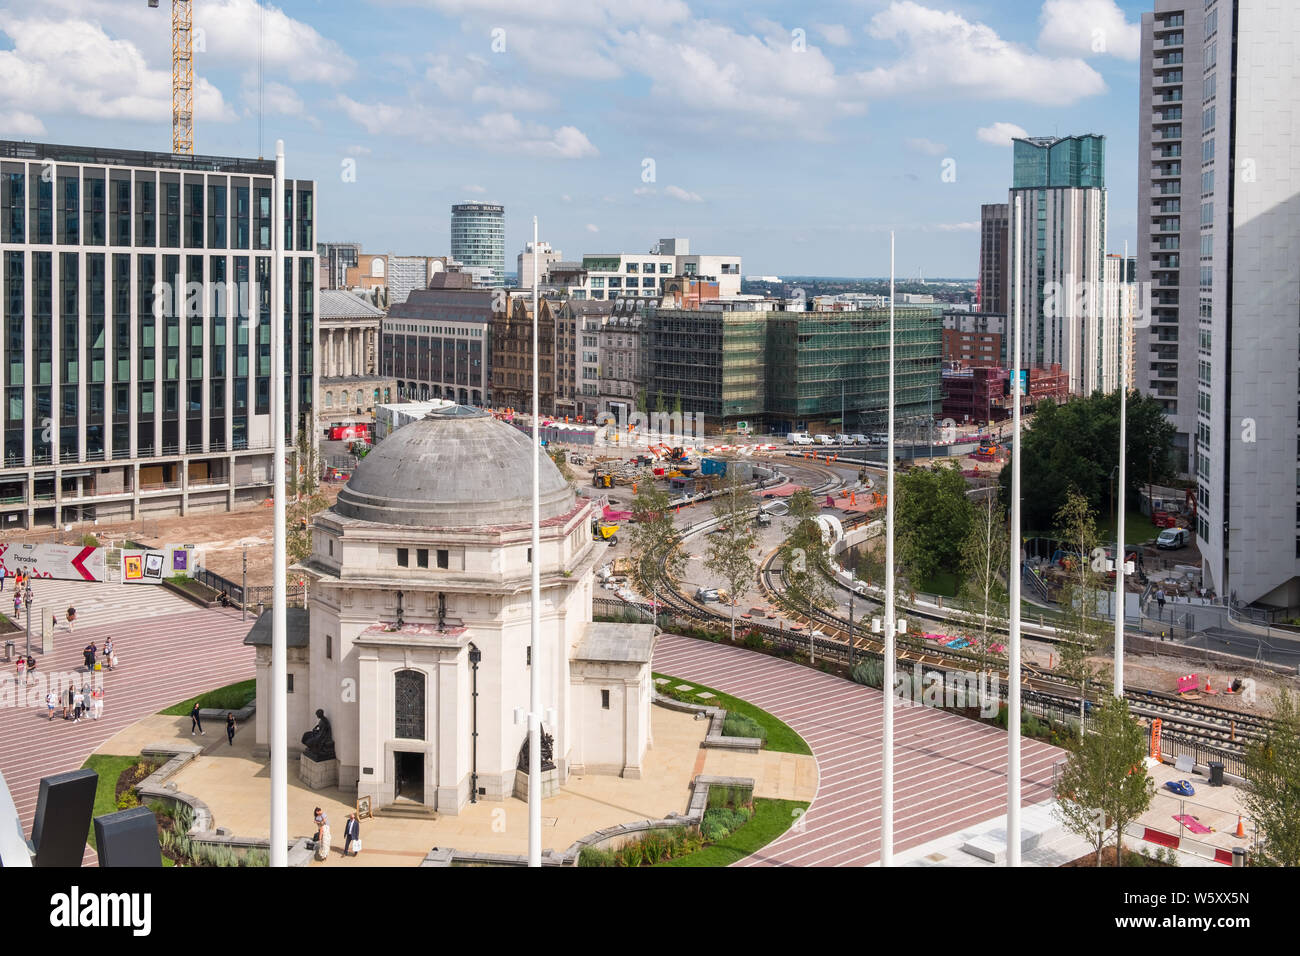 Importante proyecto de construcción continúan en Birmingham, incluido un paraíso,Plaza del Centenario y Midland Metro línea extensión en Broad Street Foto de stock